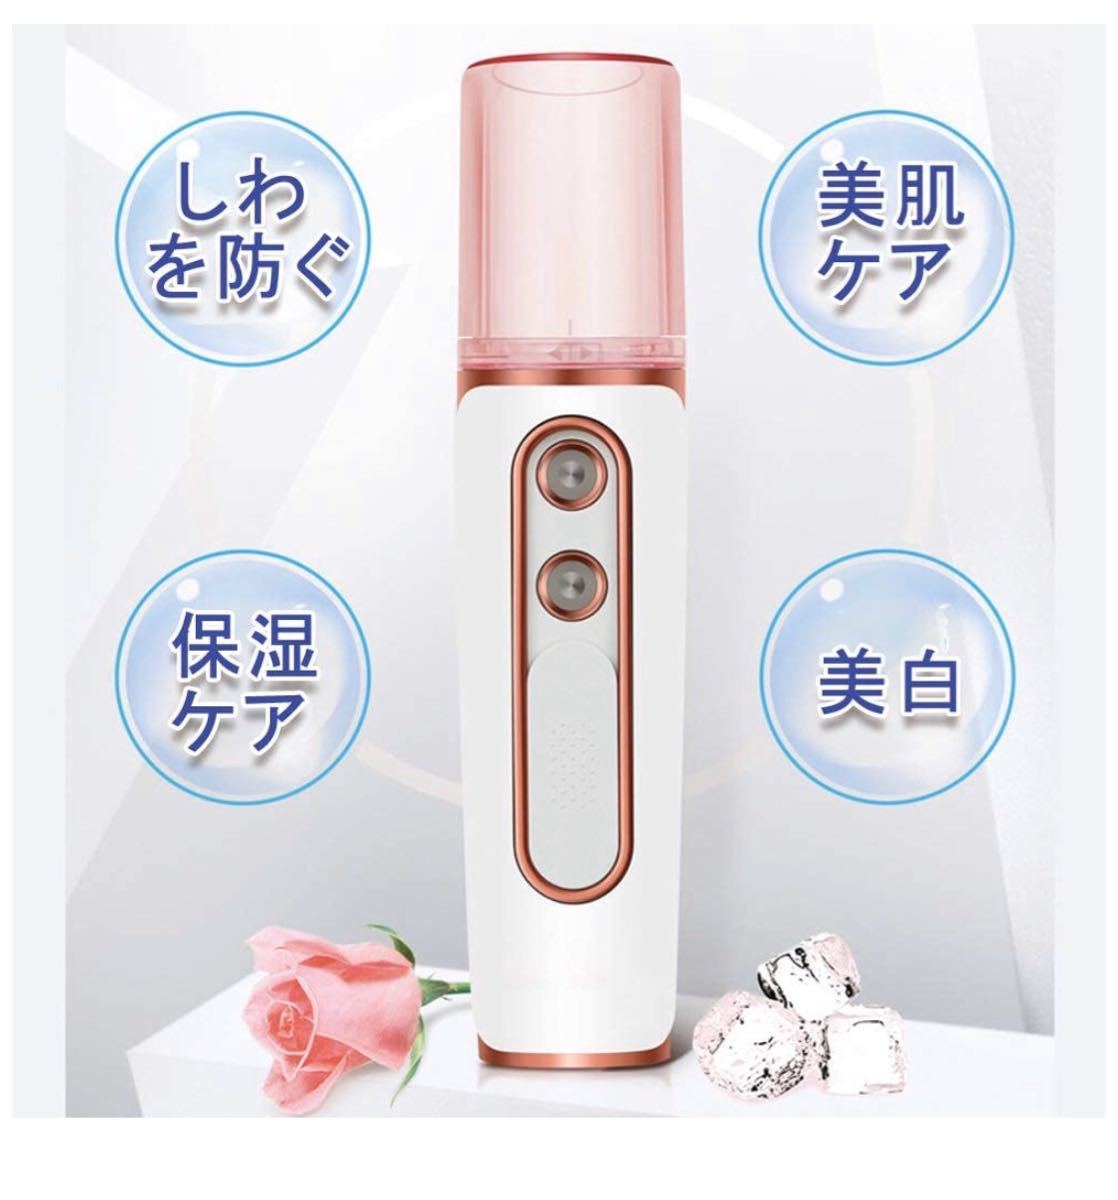 フェイススチーマー YUNJI「2020最新型」水素水スチーマー 美顔器 保湿器